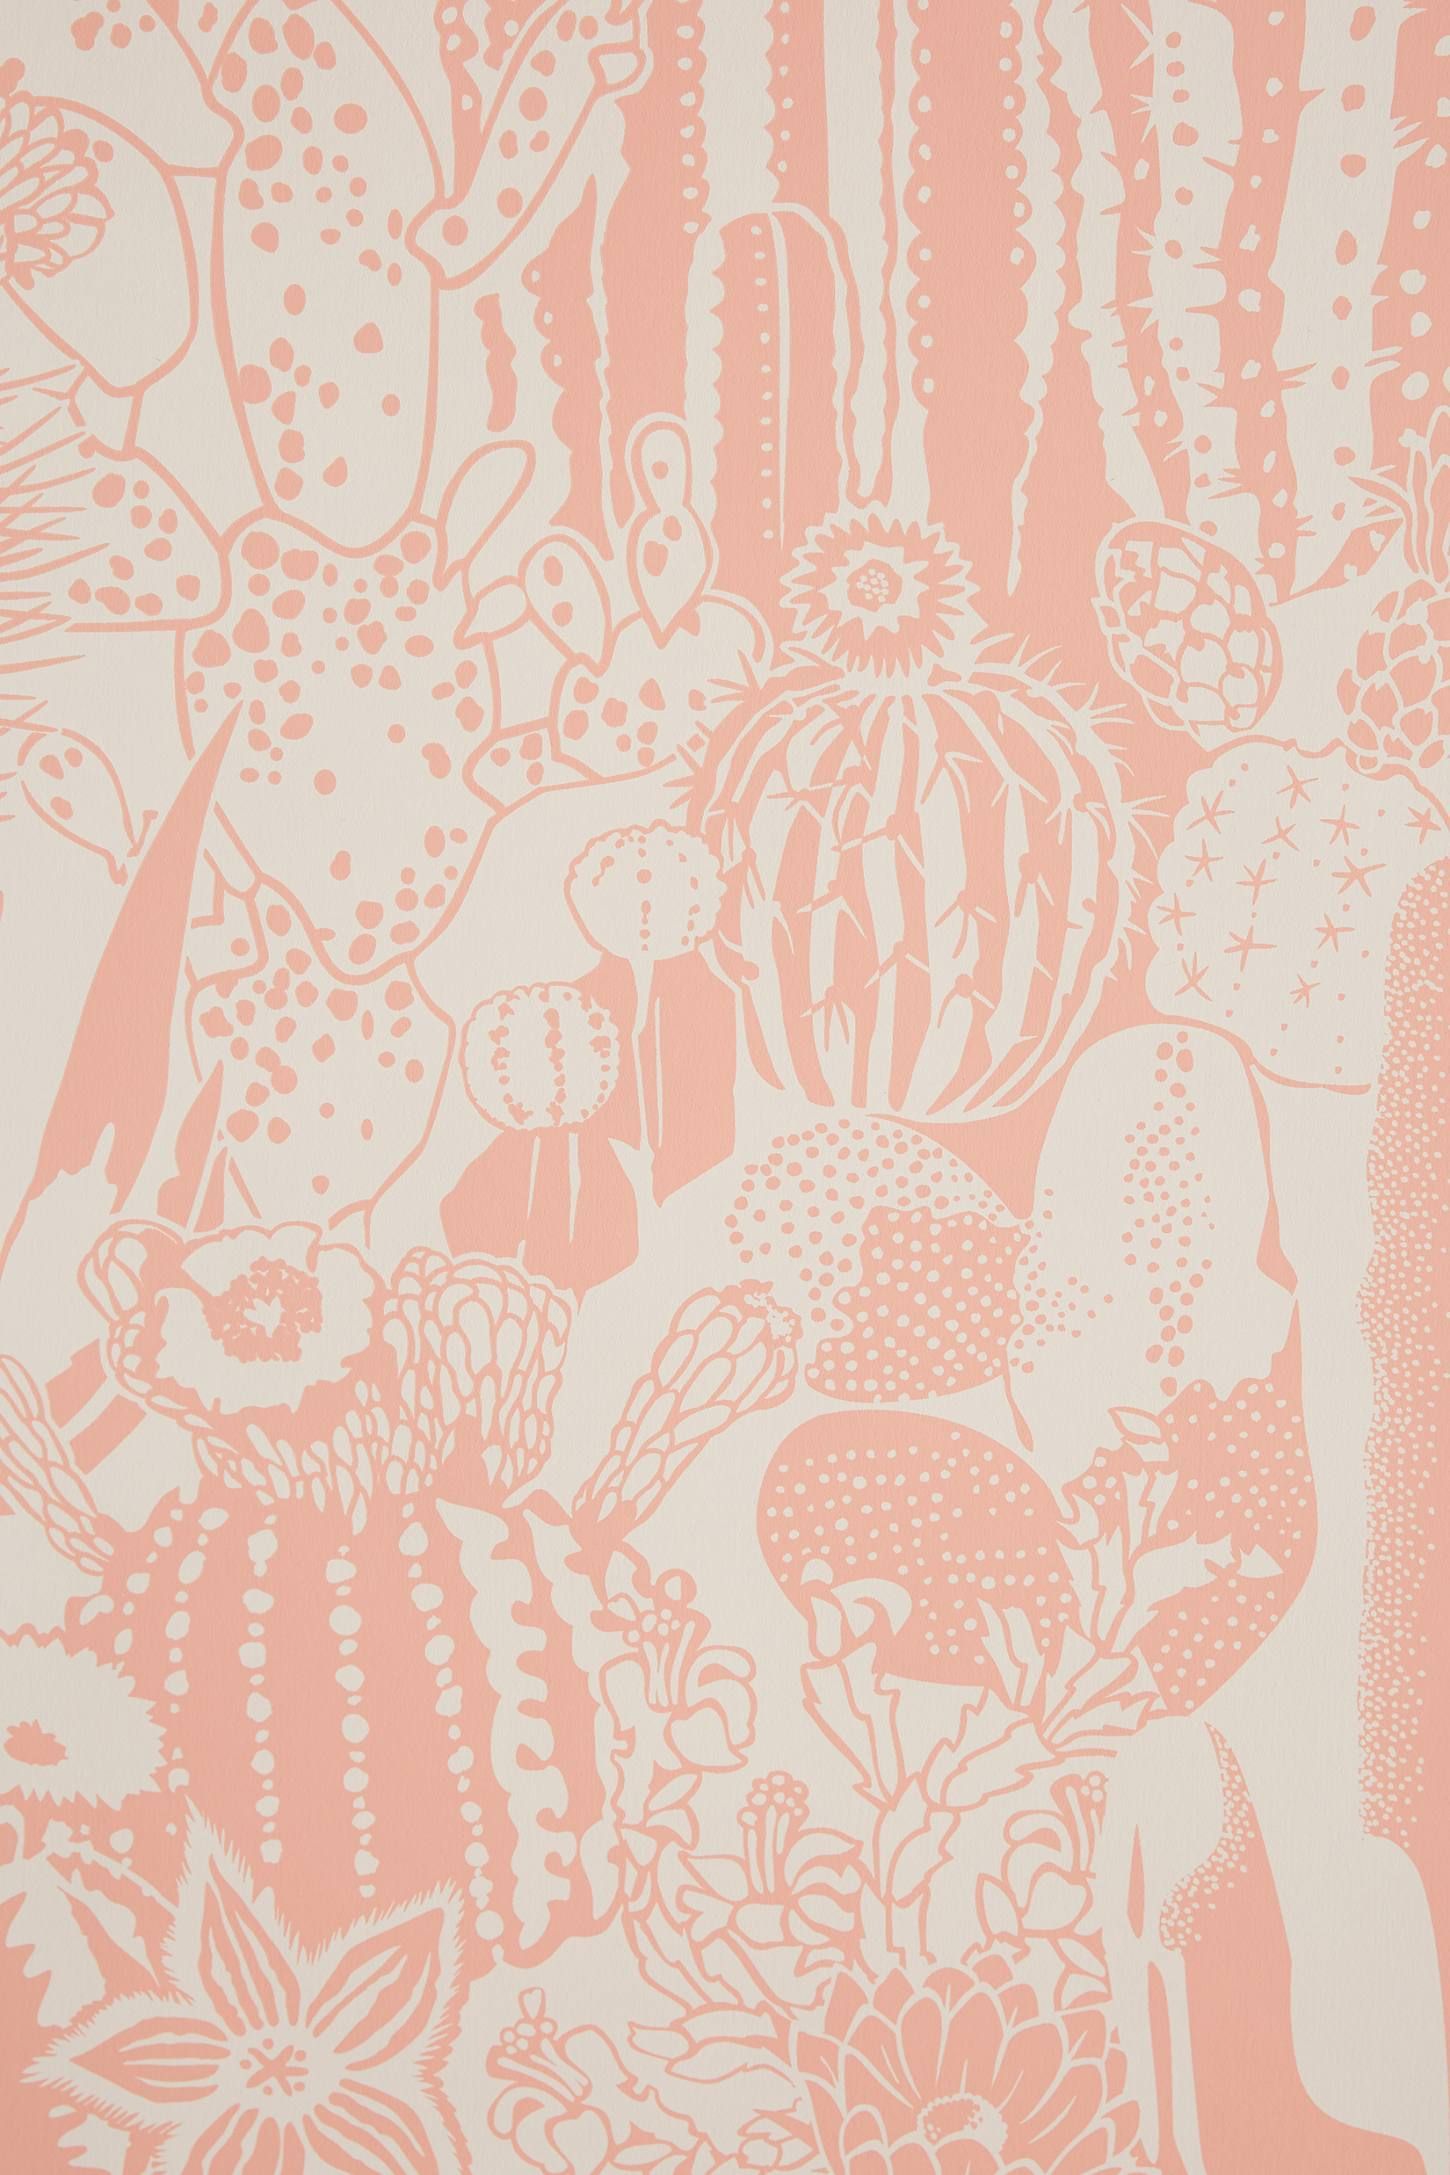 Cactus Spirit Wallpaper